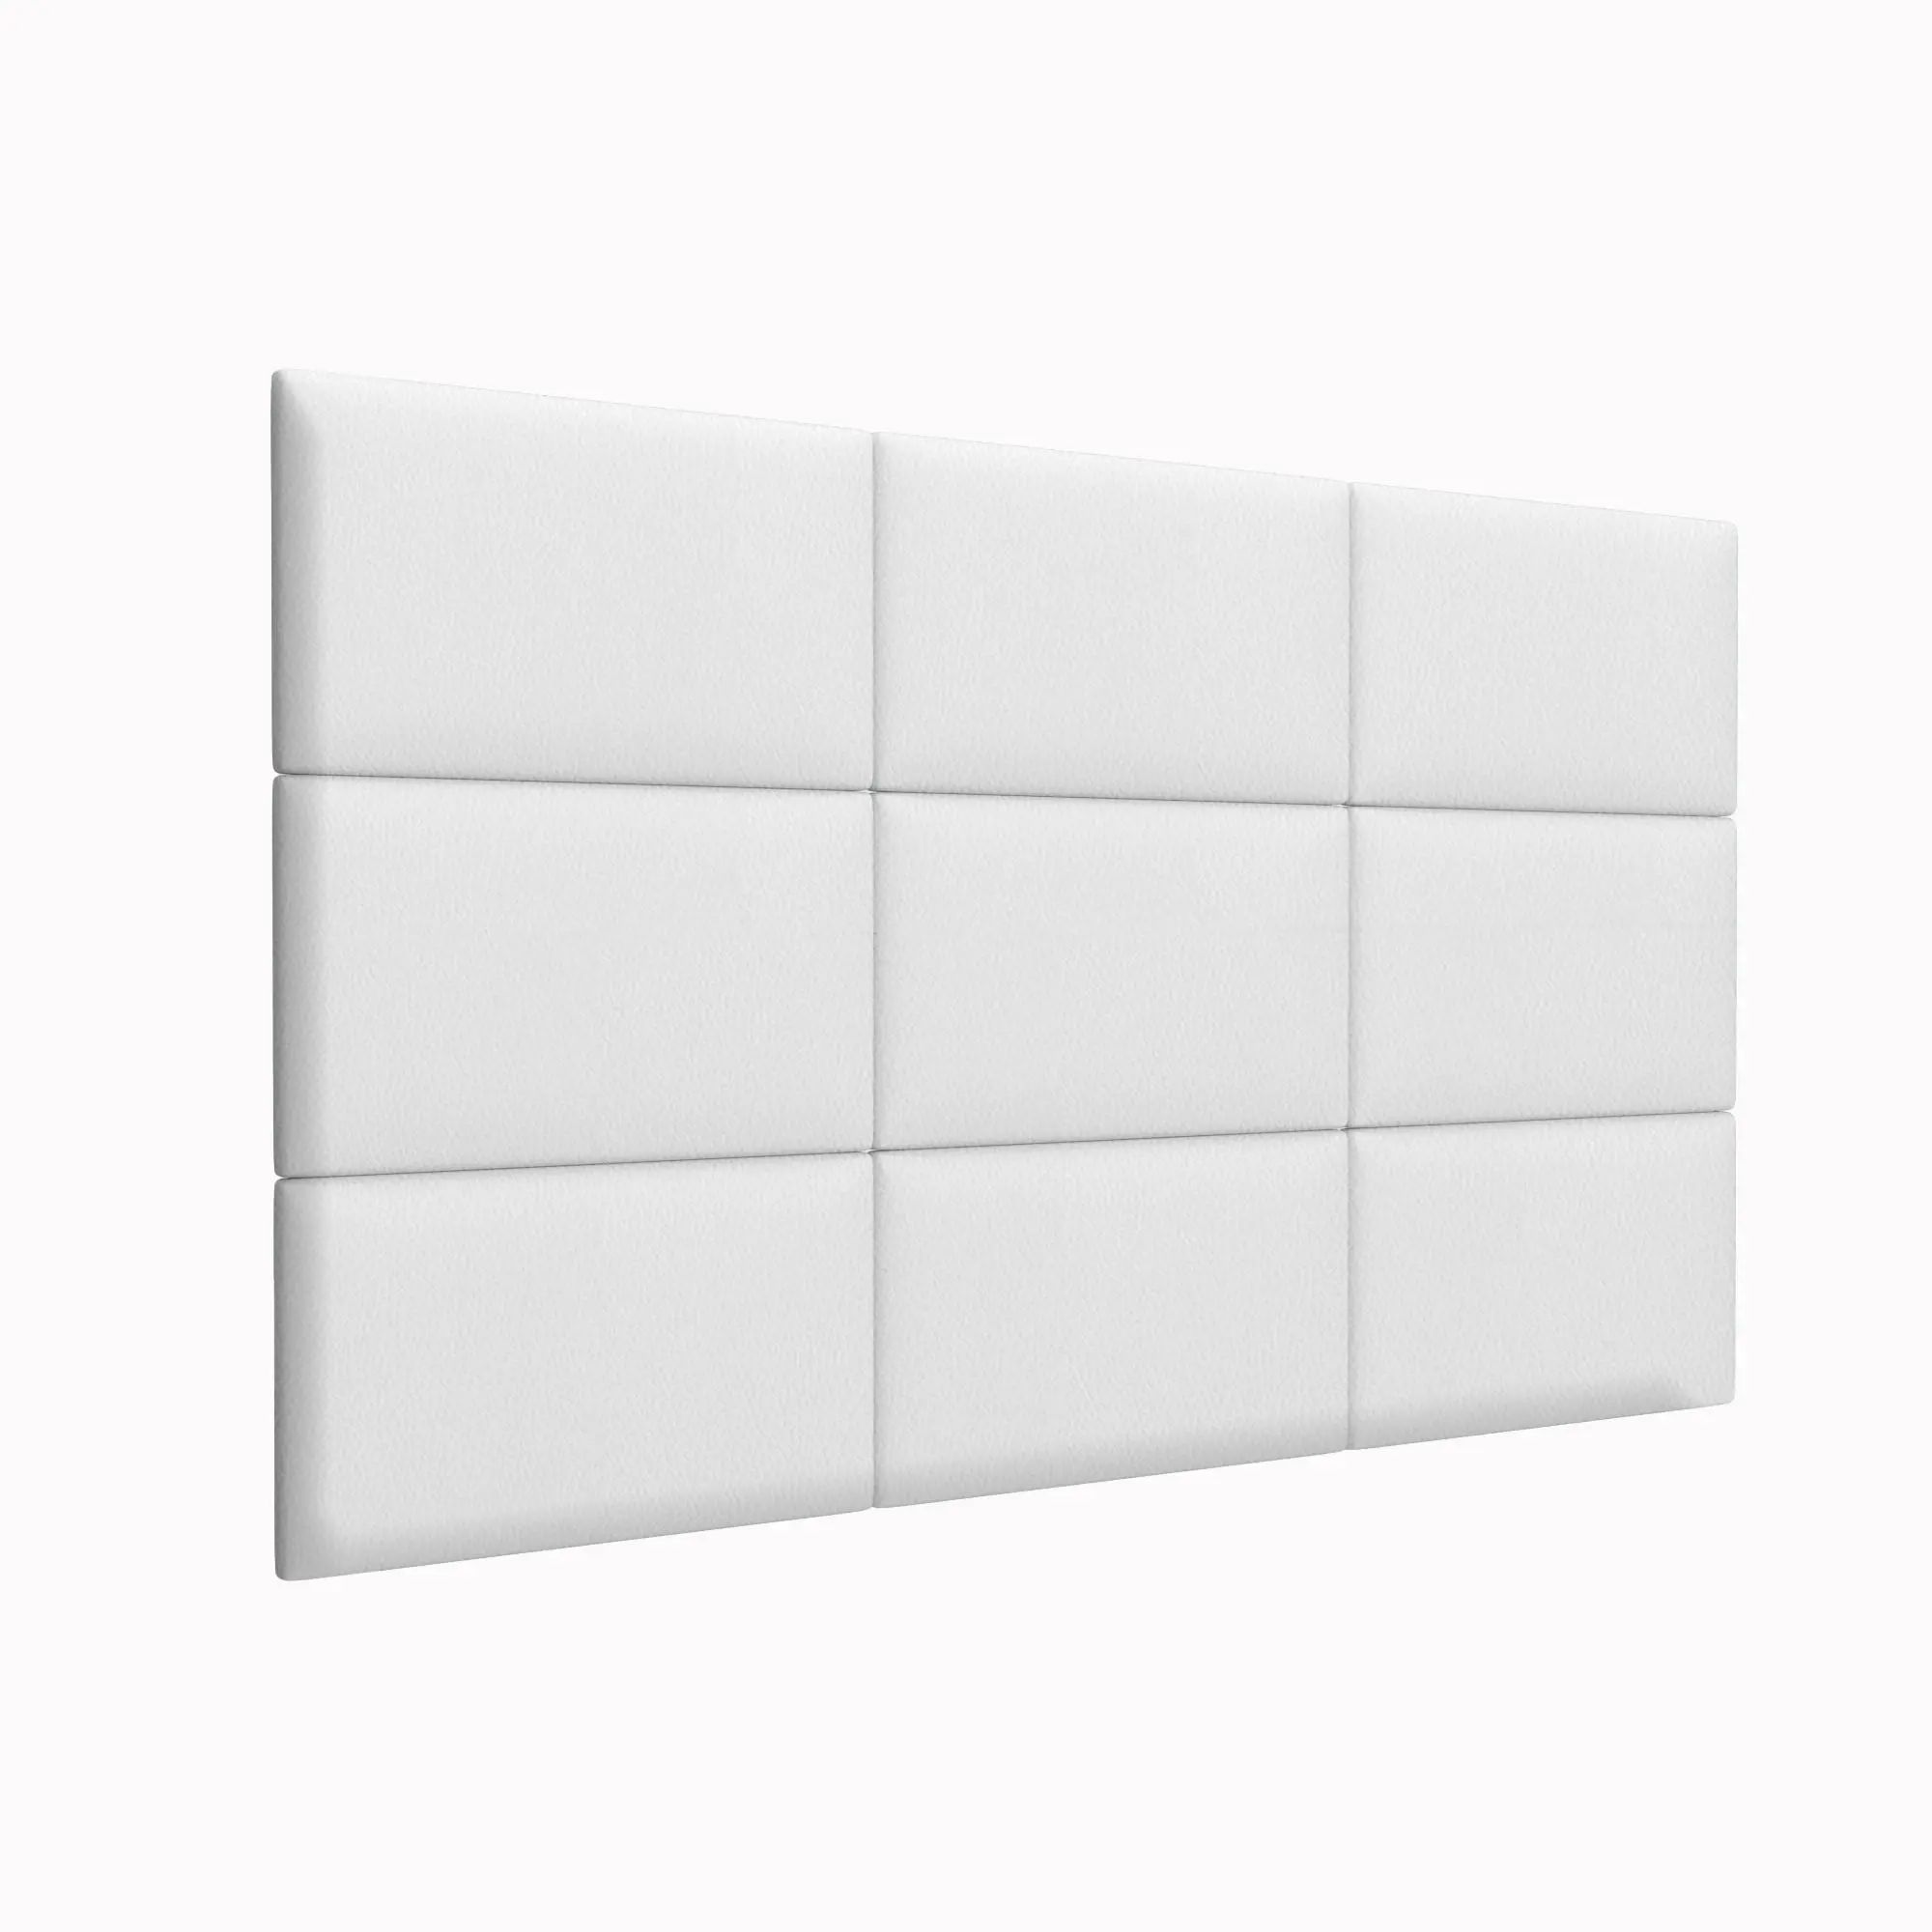 Стеновая панель Eco Leather White 30х50 см 4 шт.